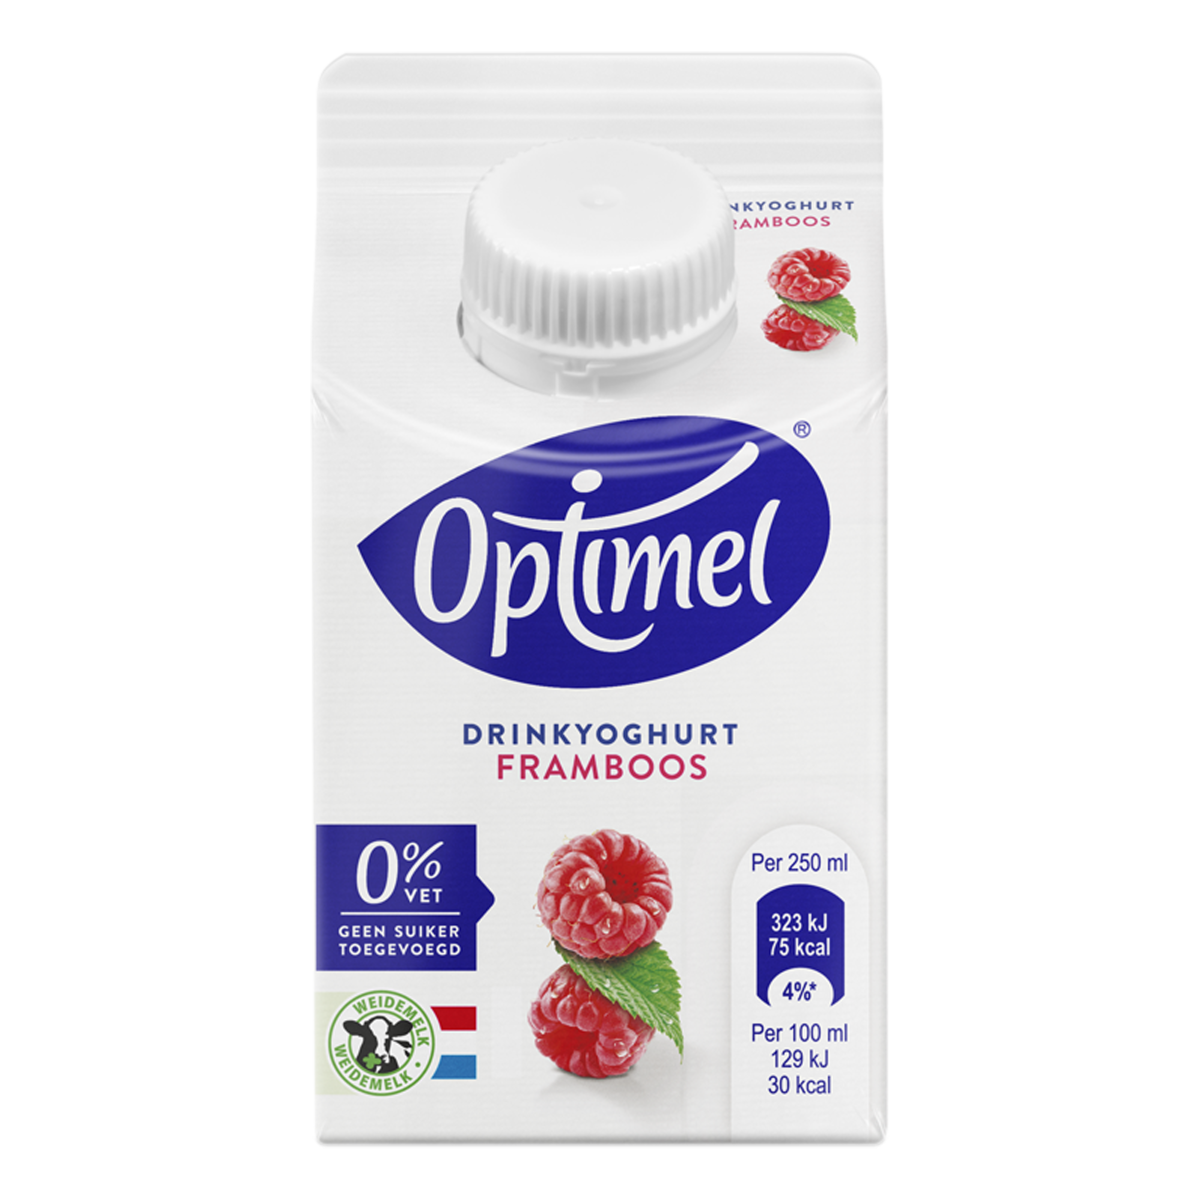 Optimel Drinkyoghurt framboos 0% vet 250mL